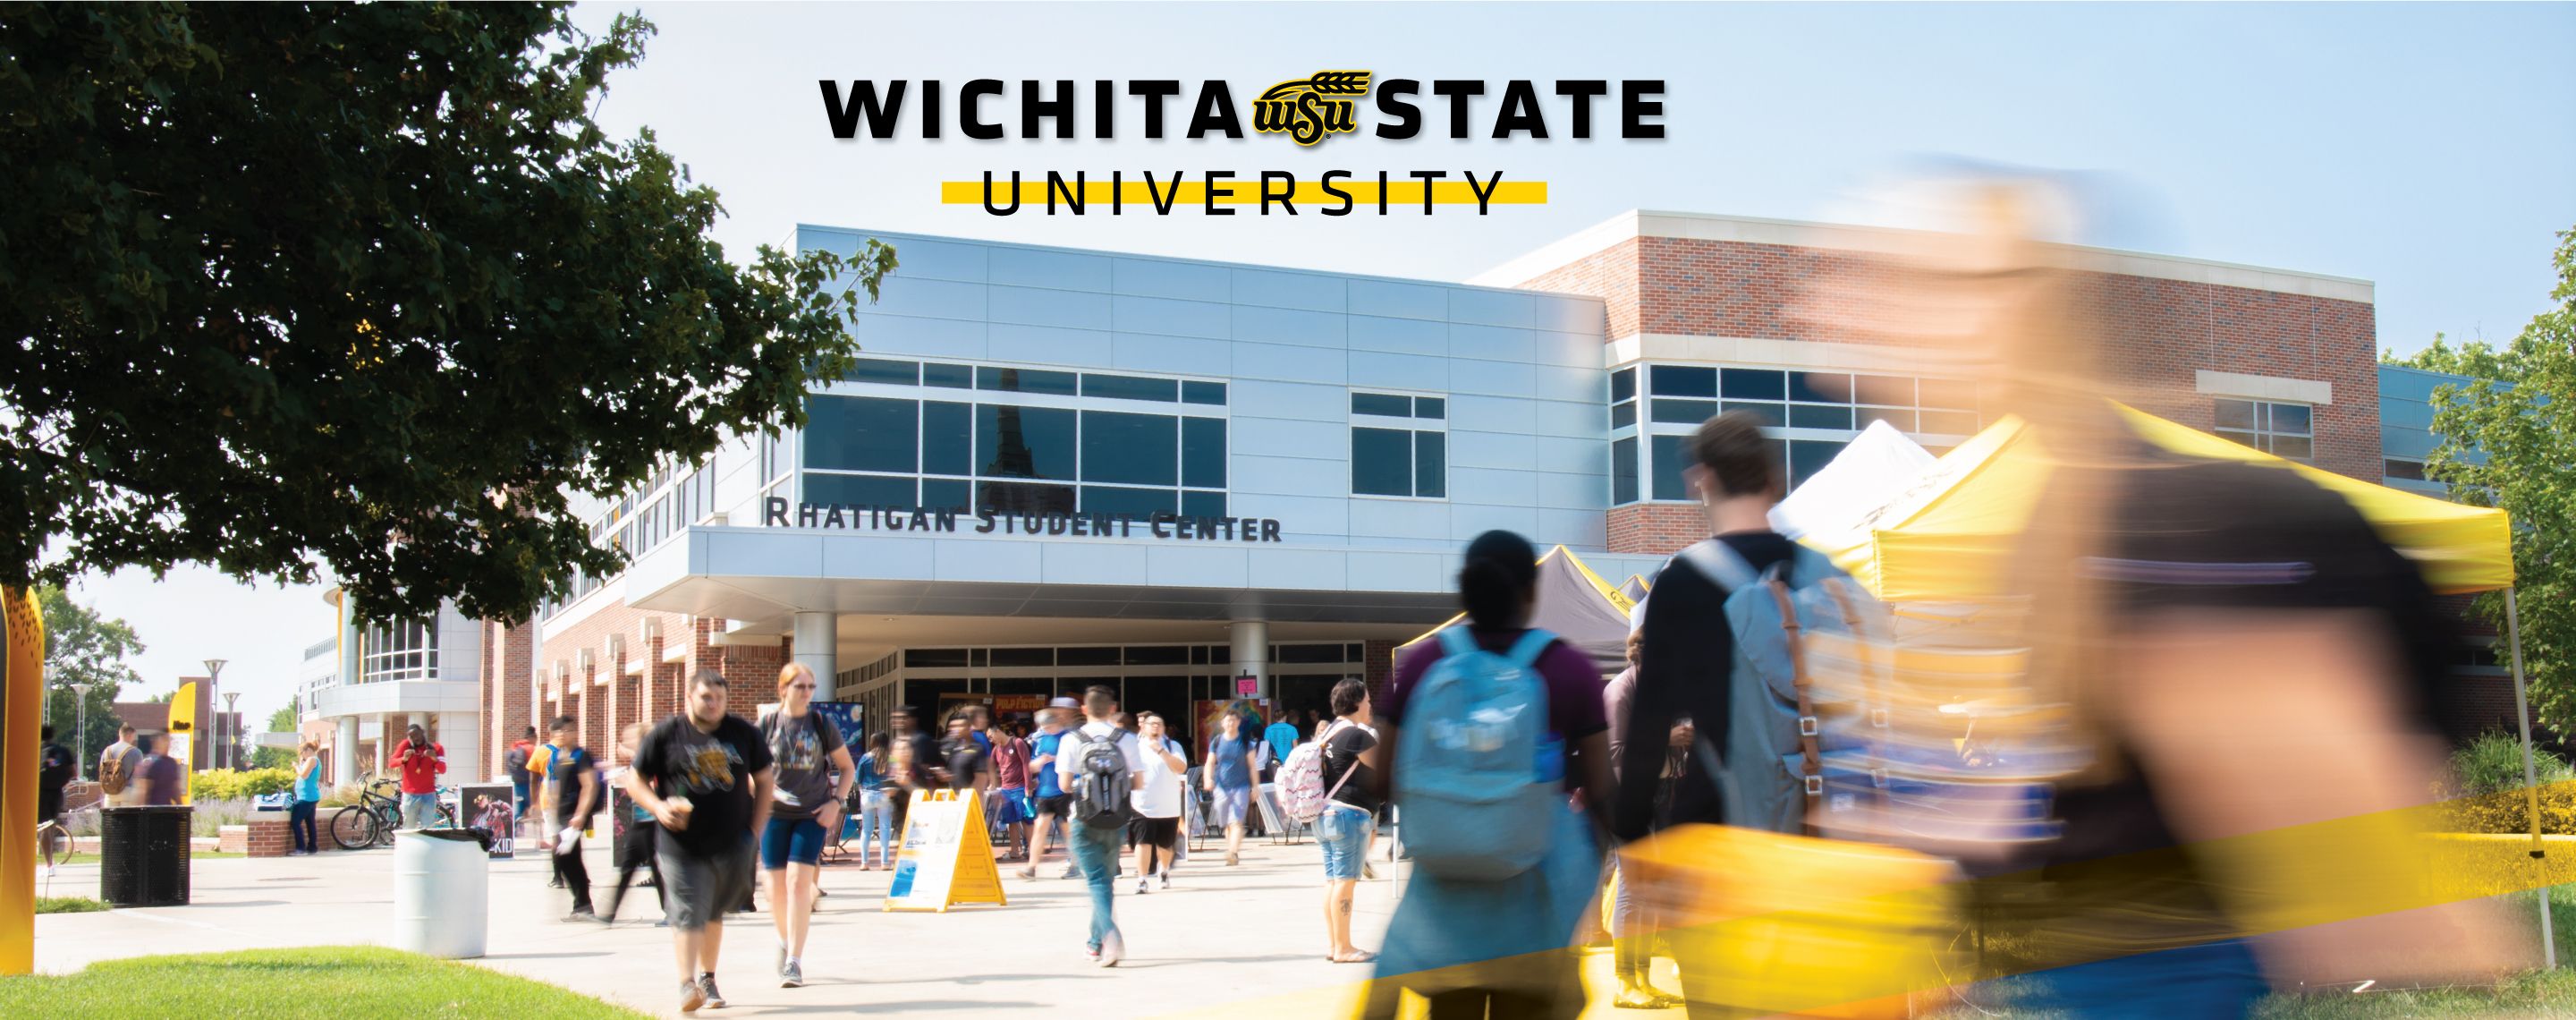 Apply to Wichita State University